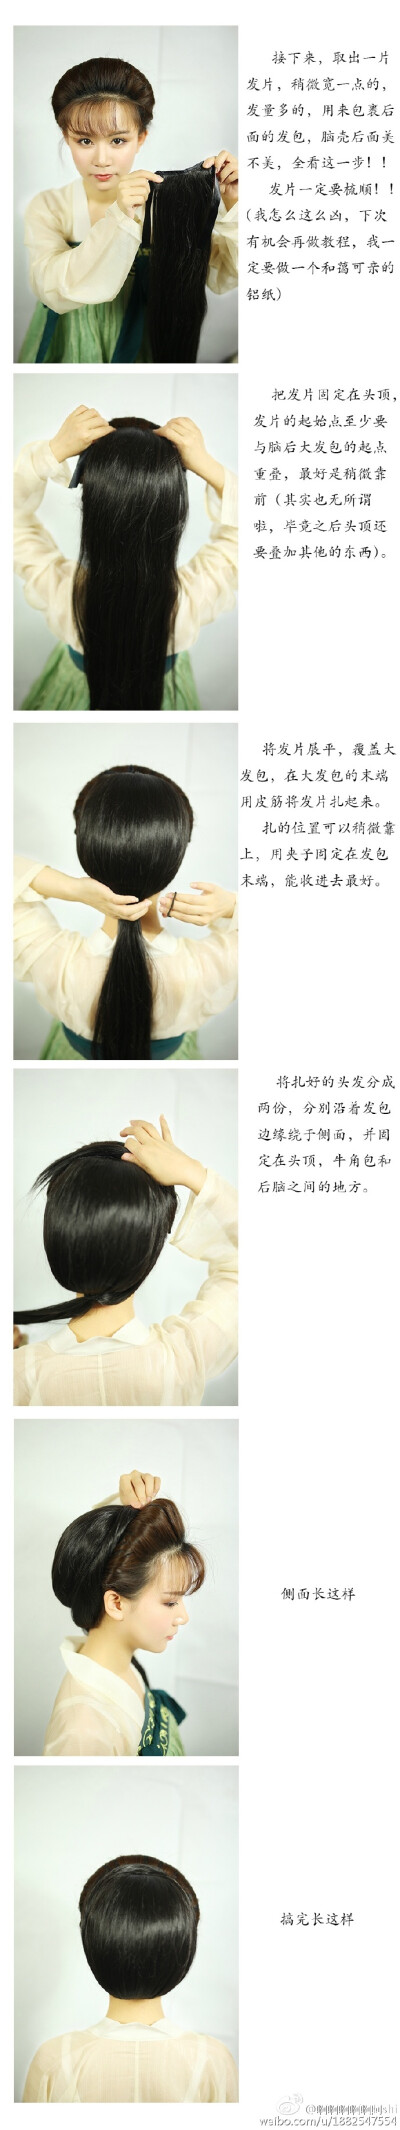 #汉服发型教程# 题为：让你看起来身高两米八的发型教程[doge] 摄影：@菠蘿菠蘿菌 妆造/模特：@啊啊啊啊啊阿shi